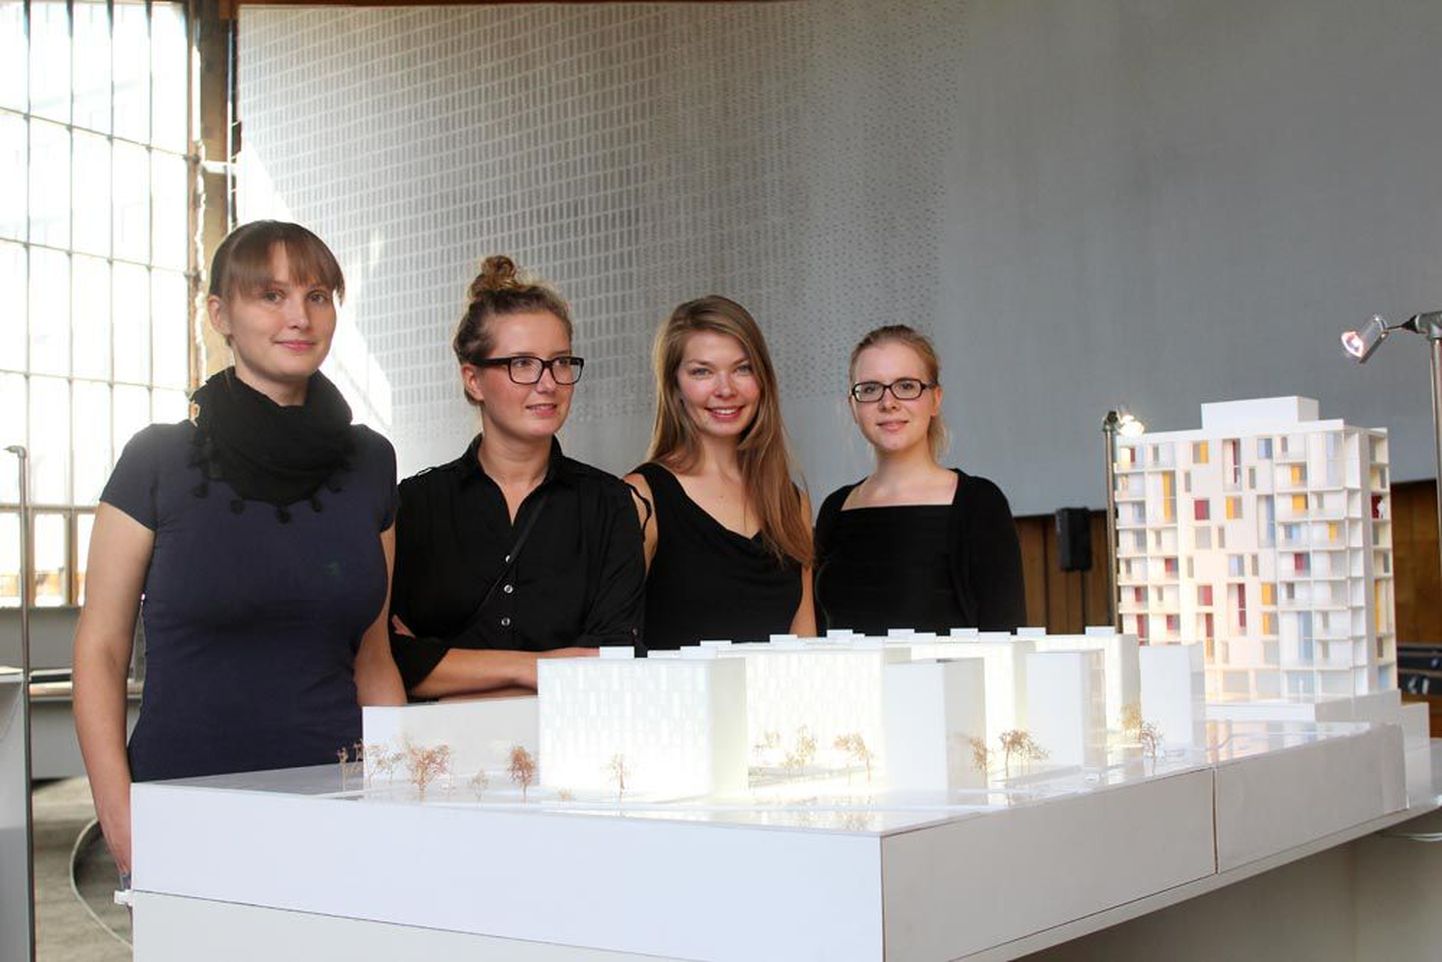 Arhitektuuribüroo b210 arhitektid (vasakult) Kadri Klementi, Aet Ader, Karin Tõugu ja Kaidi Õis. Fotol on kujutatud büroo varasem töö. Vaata fotosid Londoni poodiumilt klikkides loo lõpus olevale lingile.